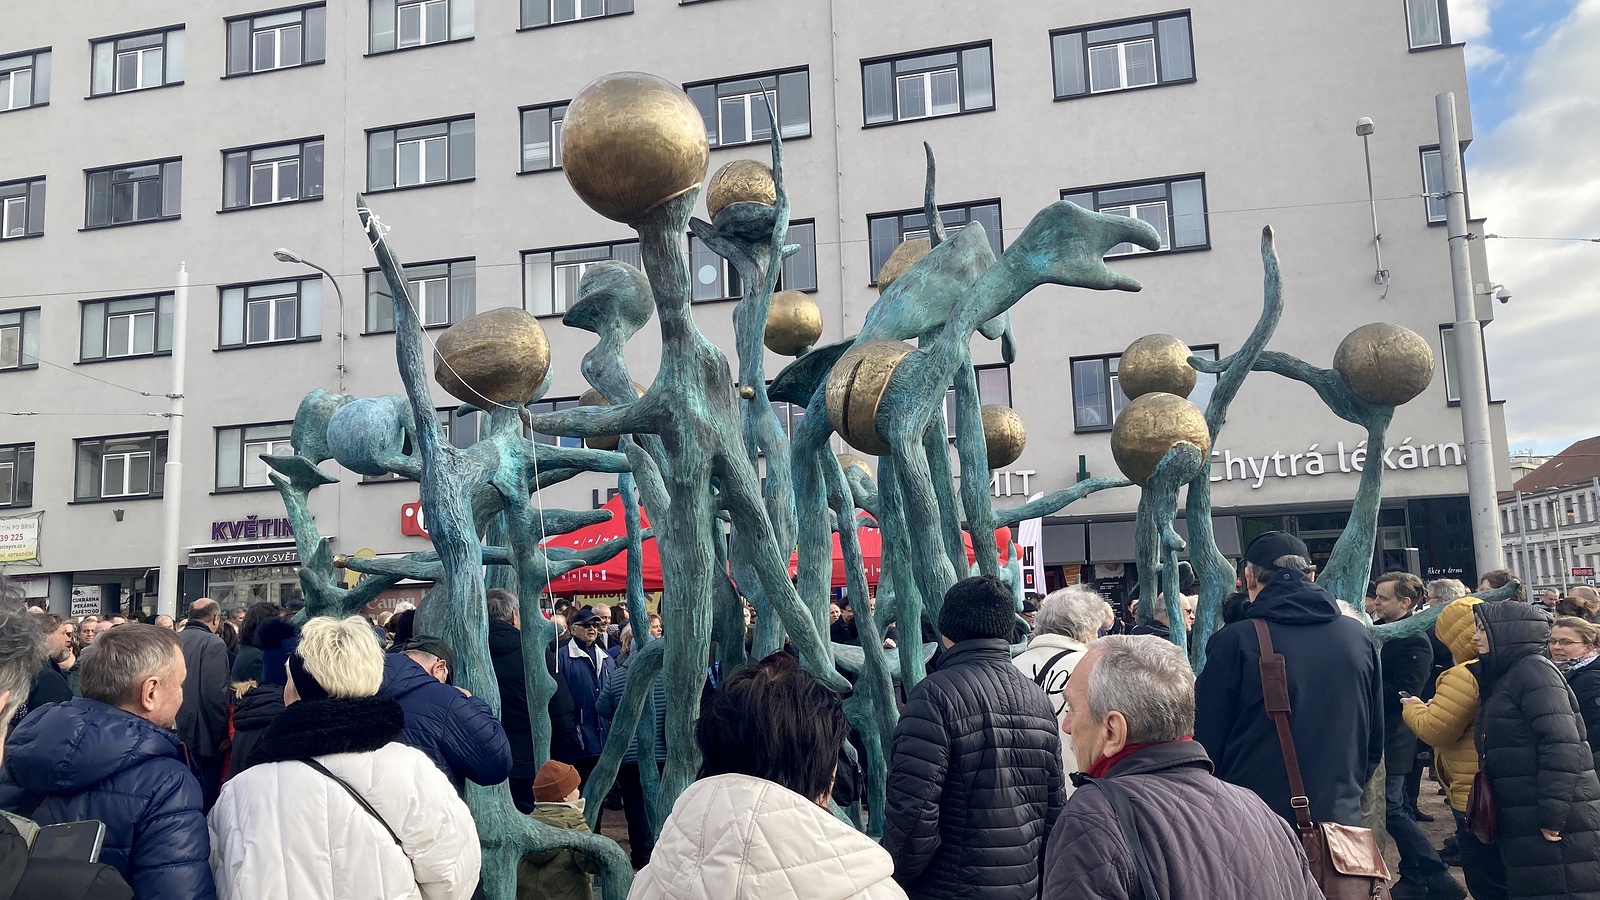 VIDEO: Mendlovo náměstí v Brně je v novém, kritizované zábradlí dostane  průchody - Brněnský deník